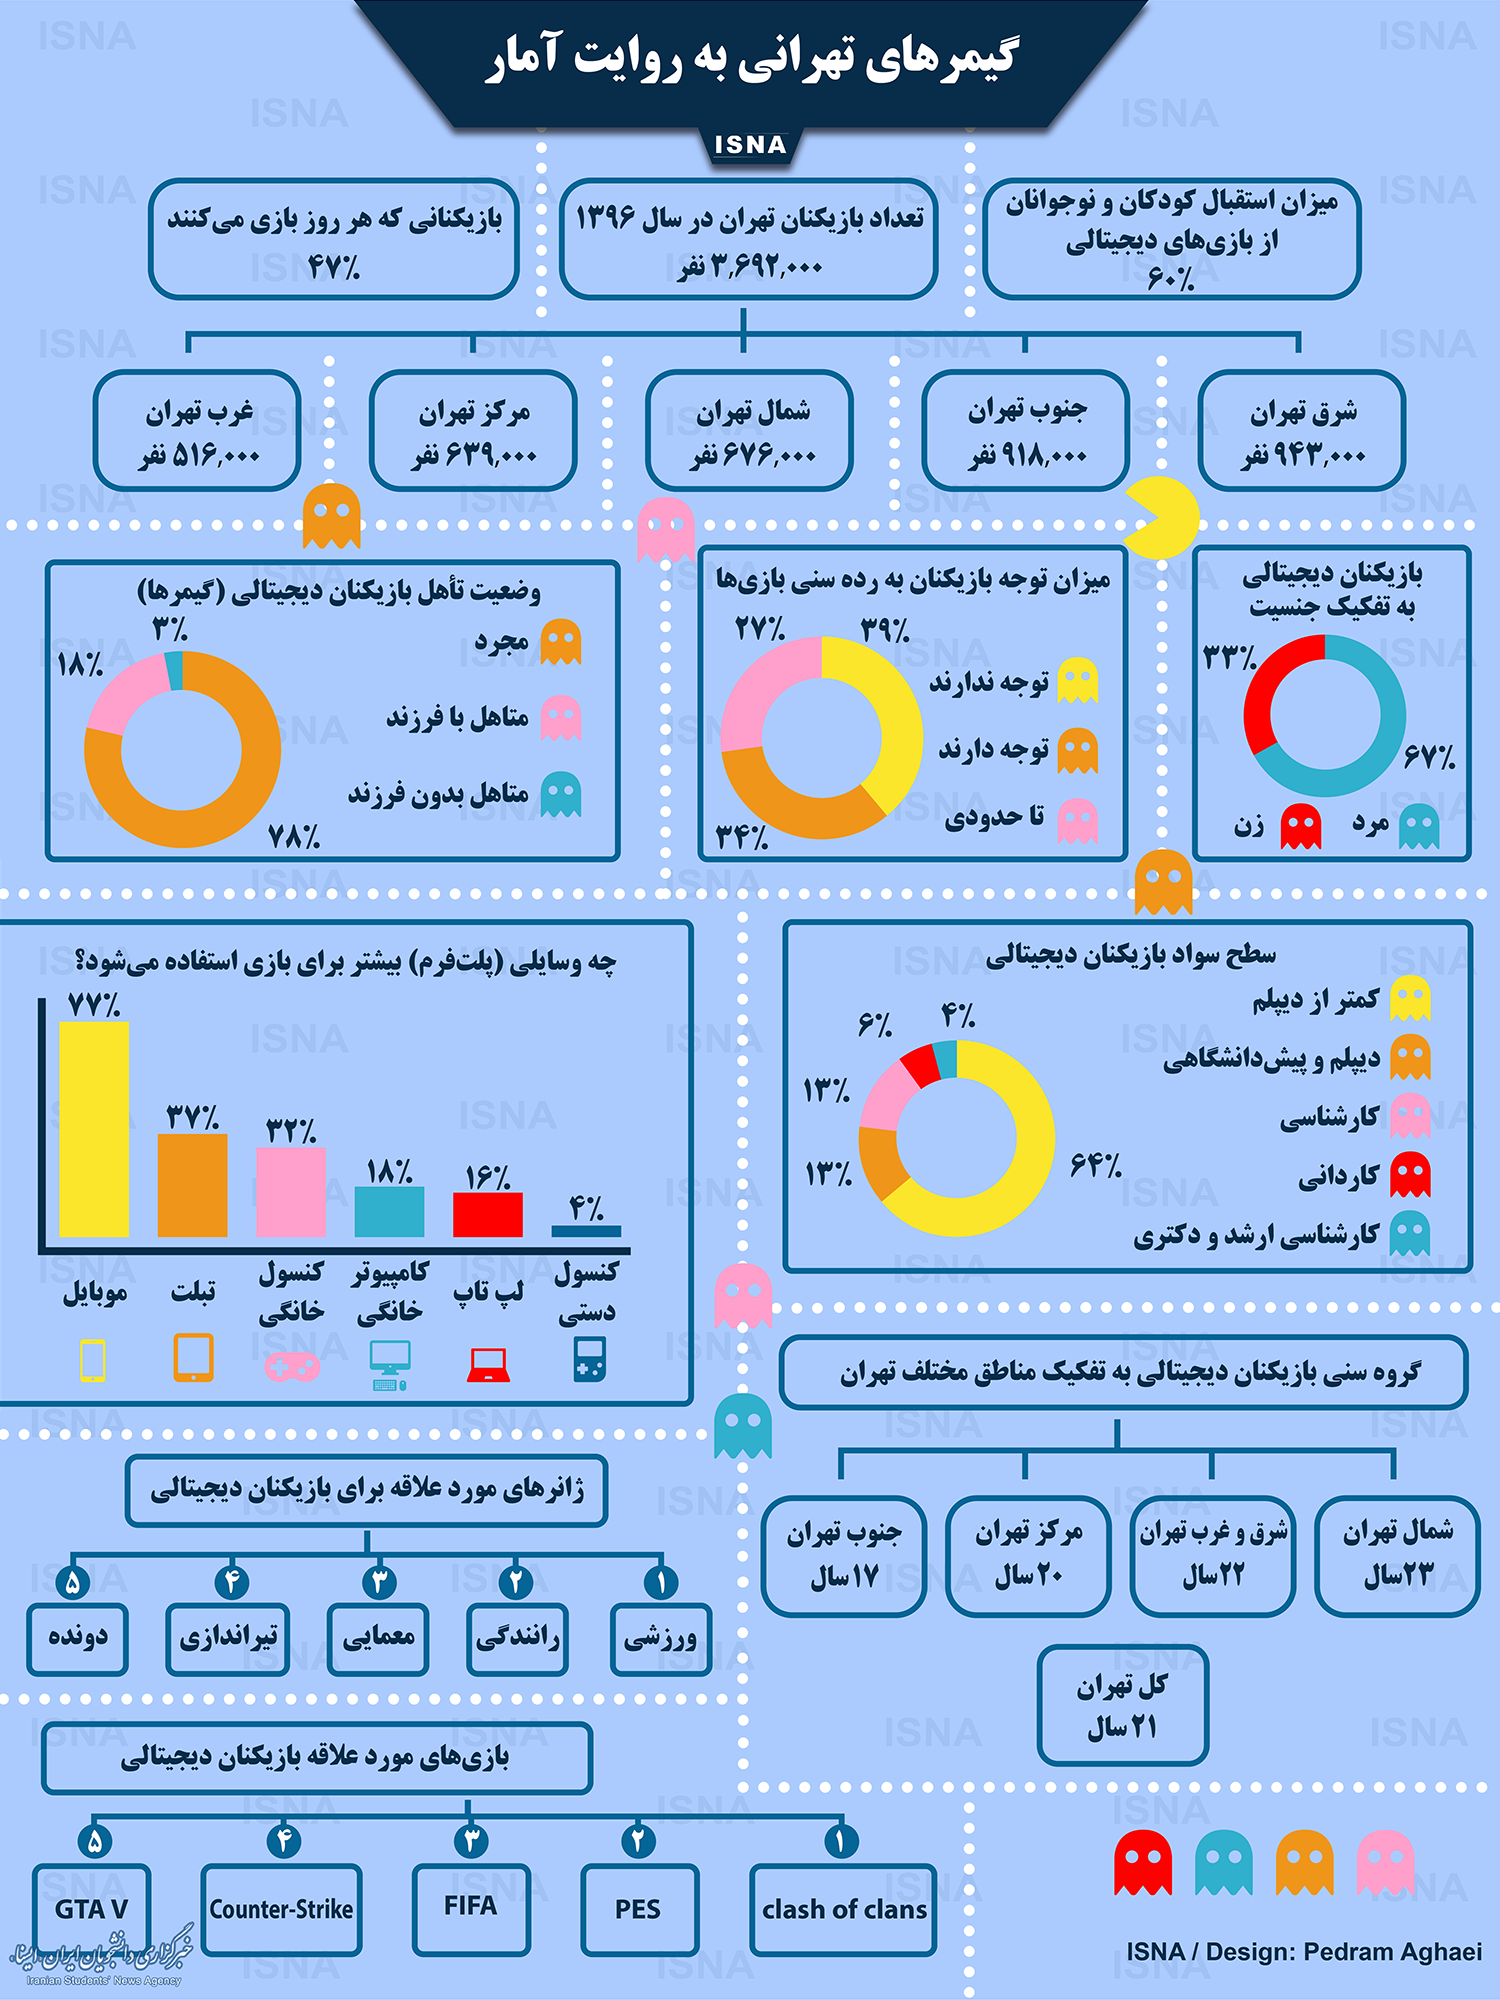 اینفوگرافی / گیمرهای تهرانی به روایت آمار